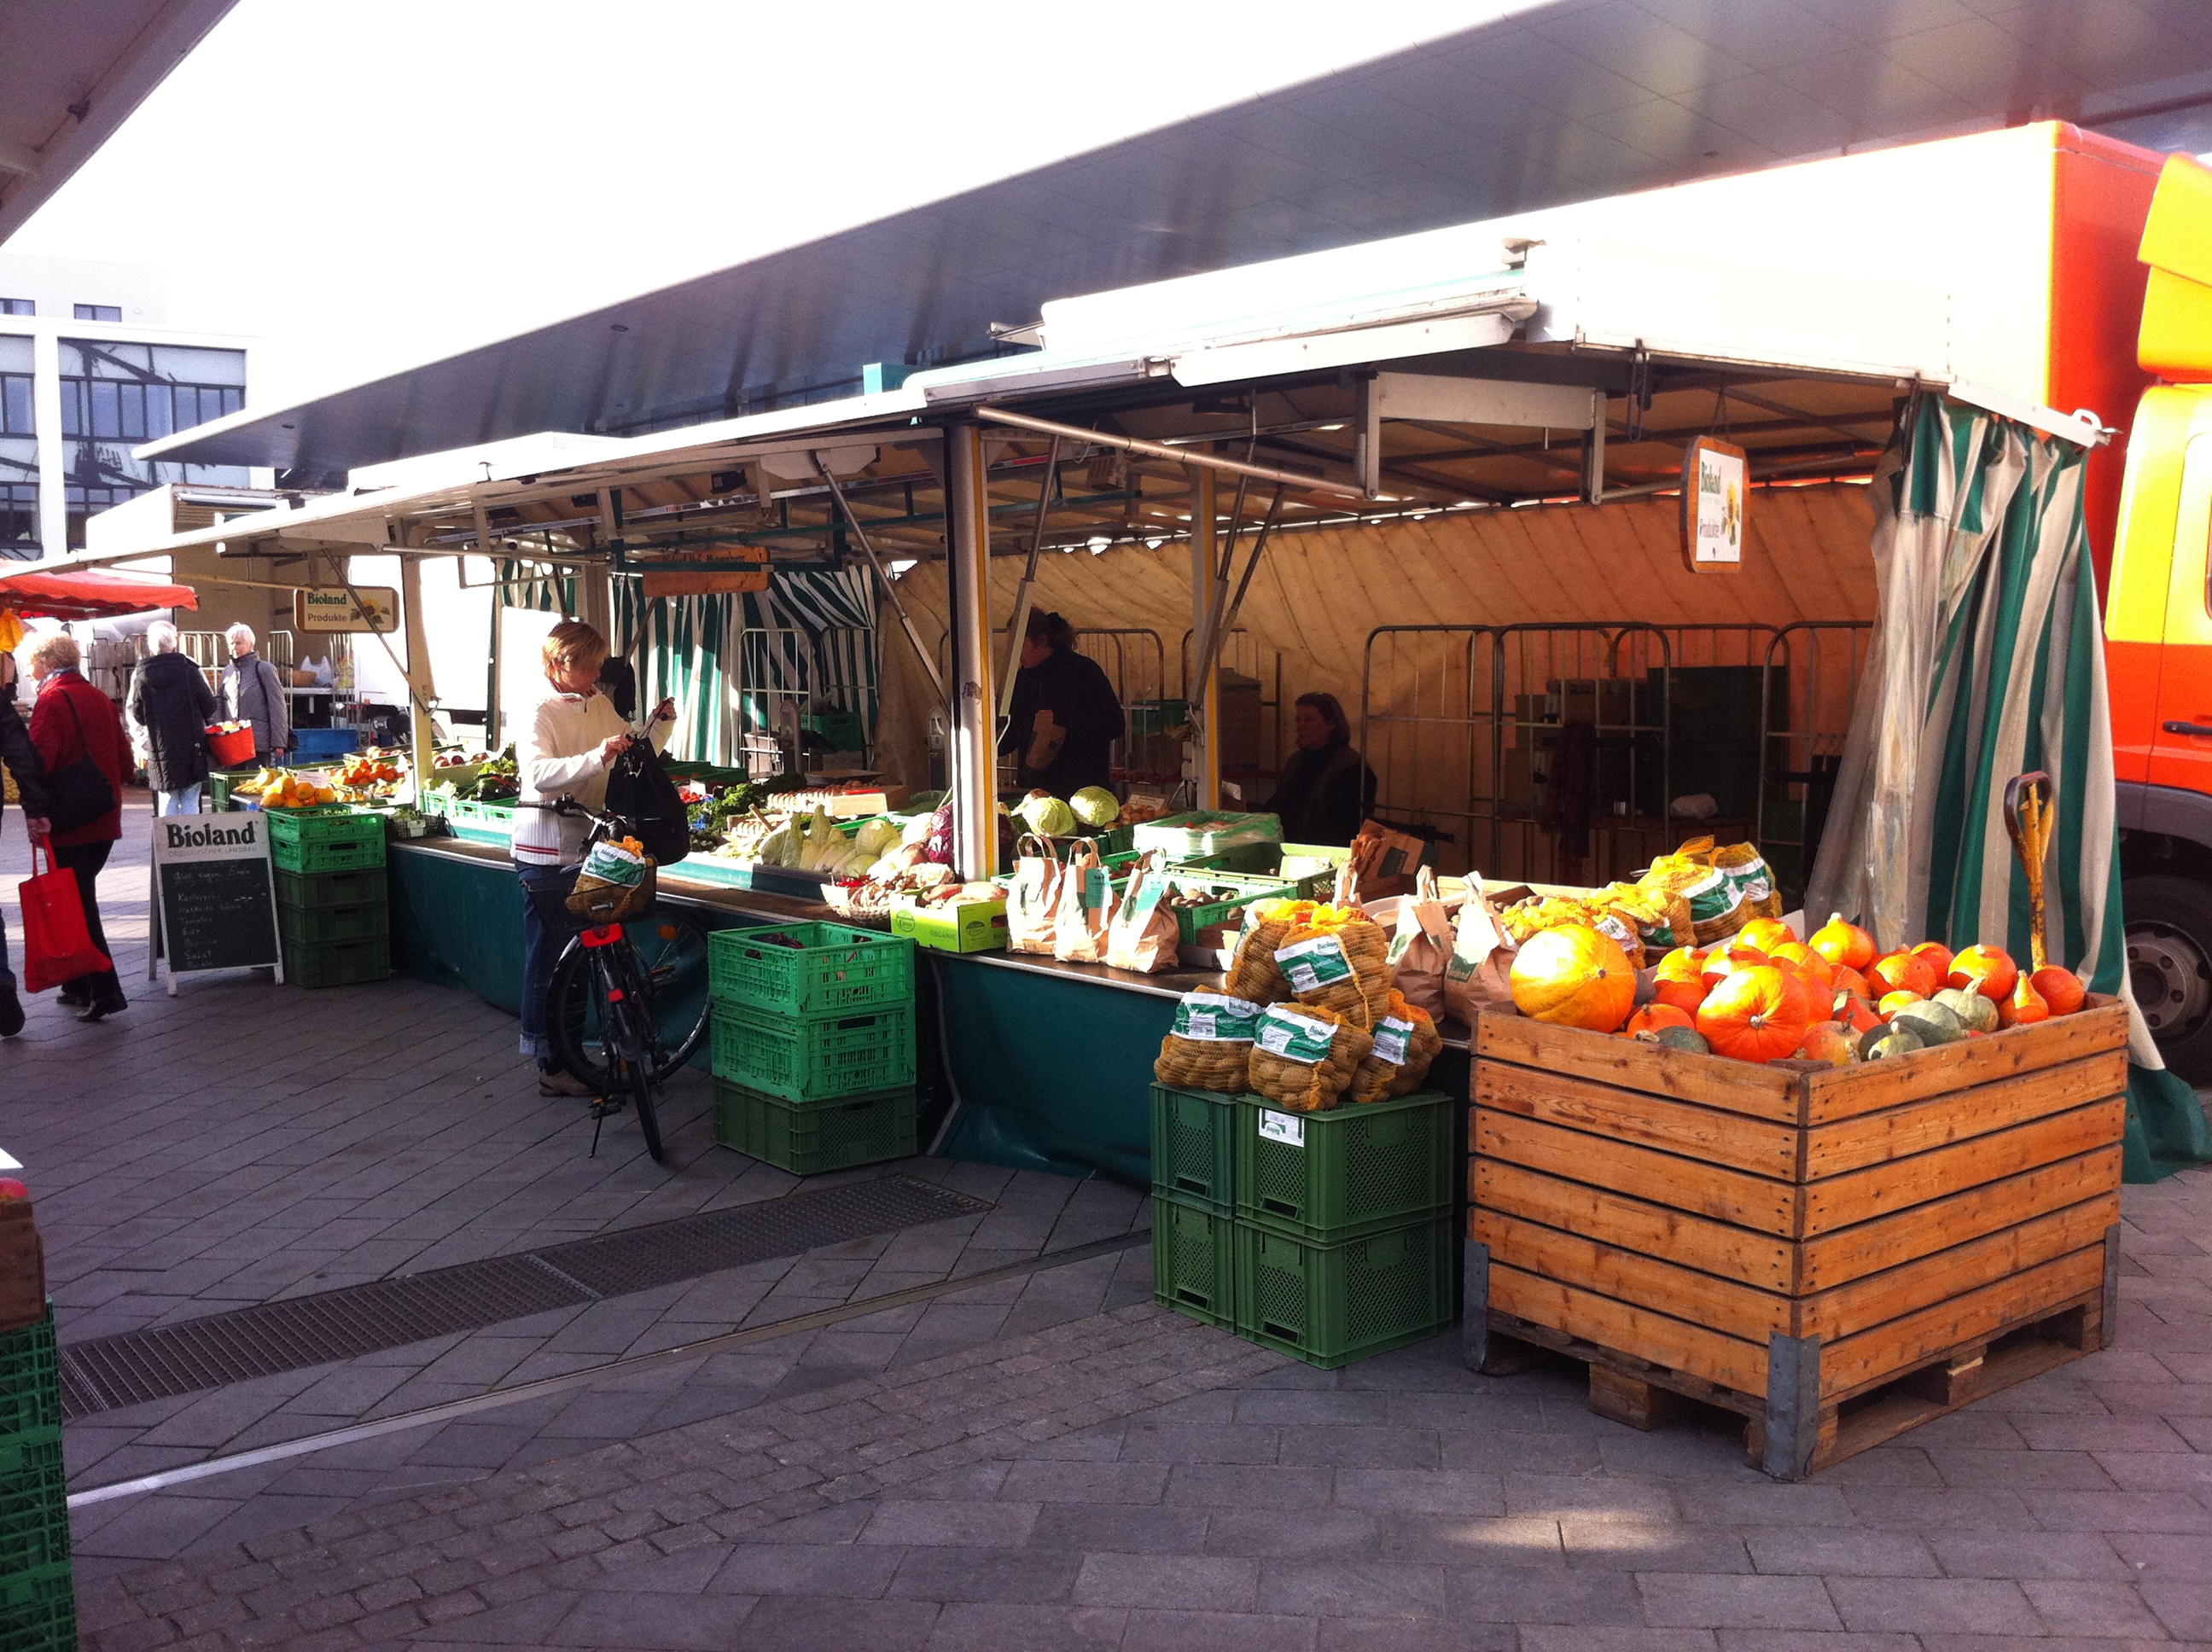 Wochenmarkt in Vegesack am 3.11.2011